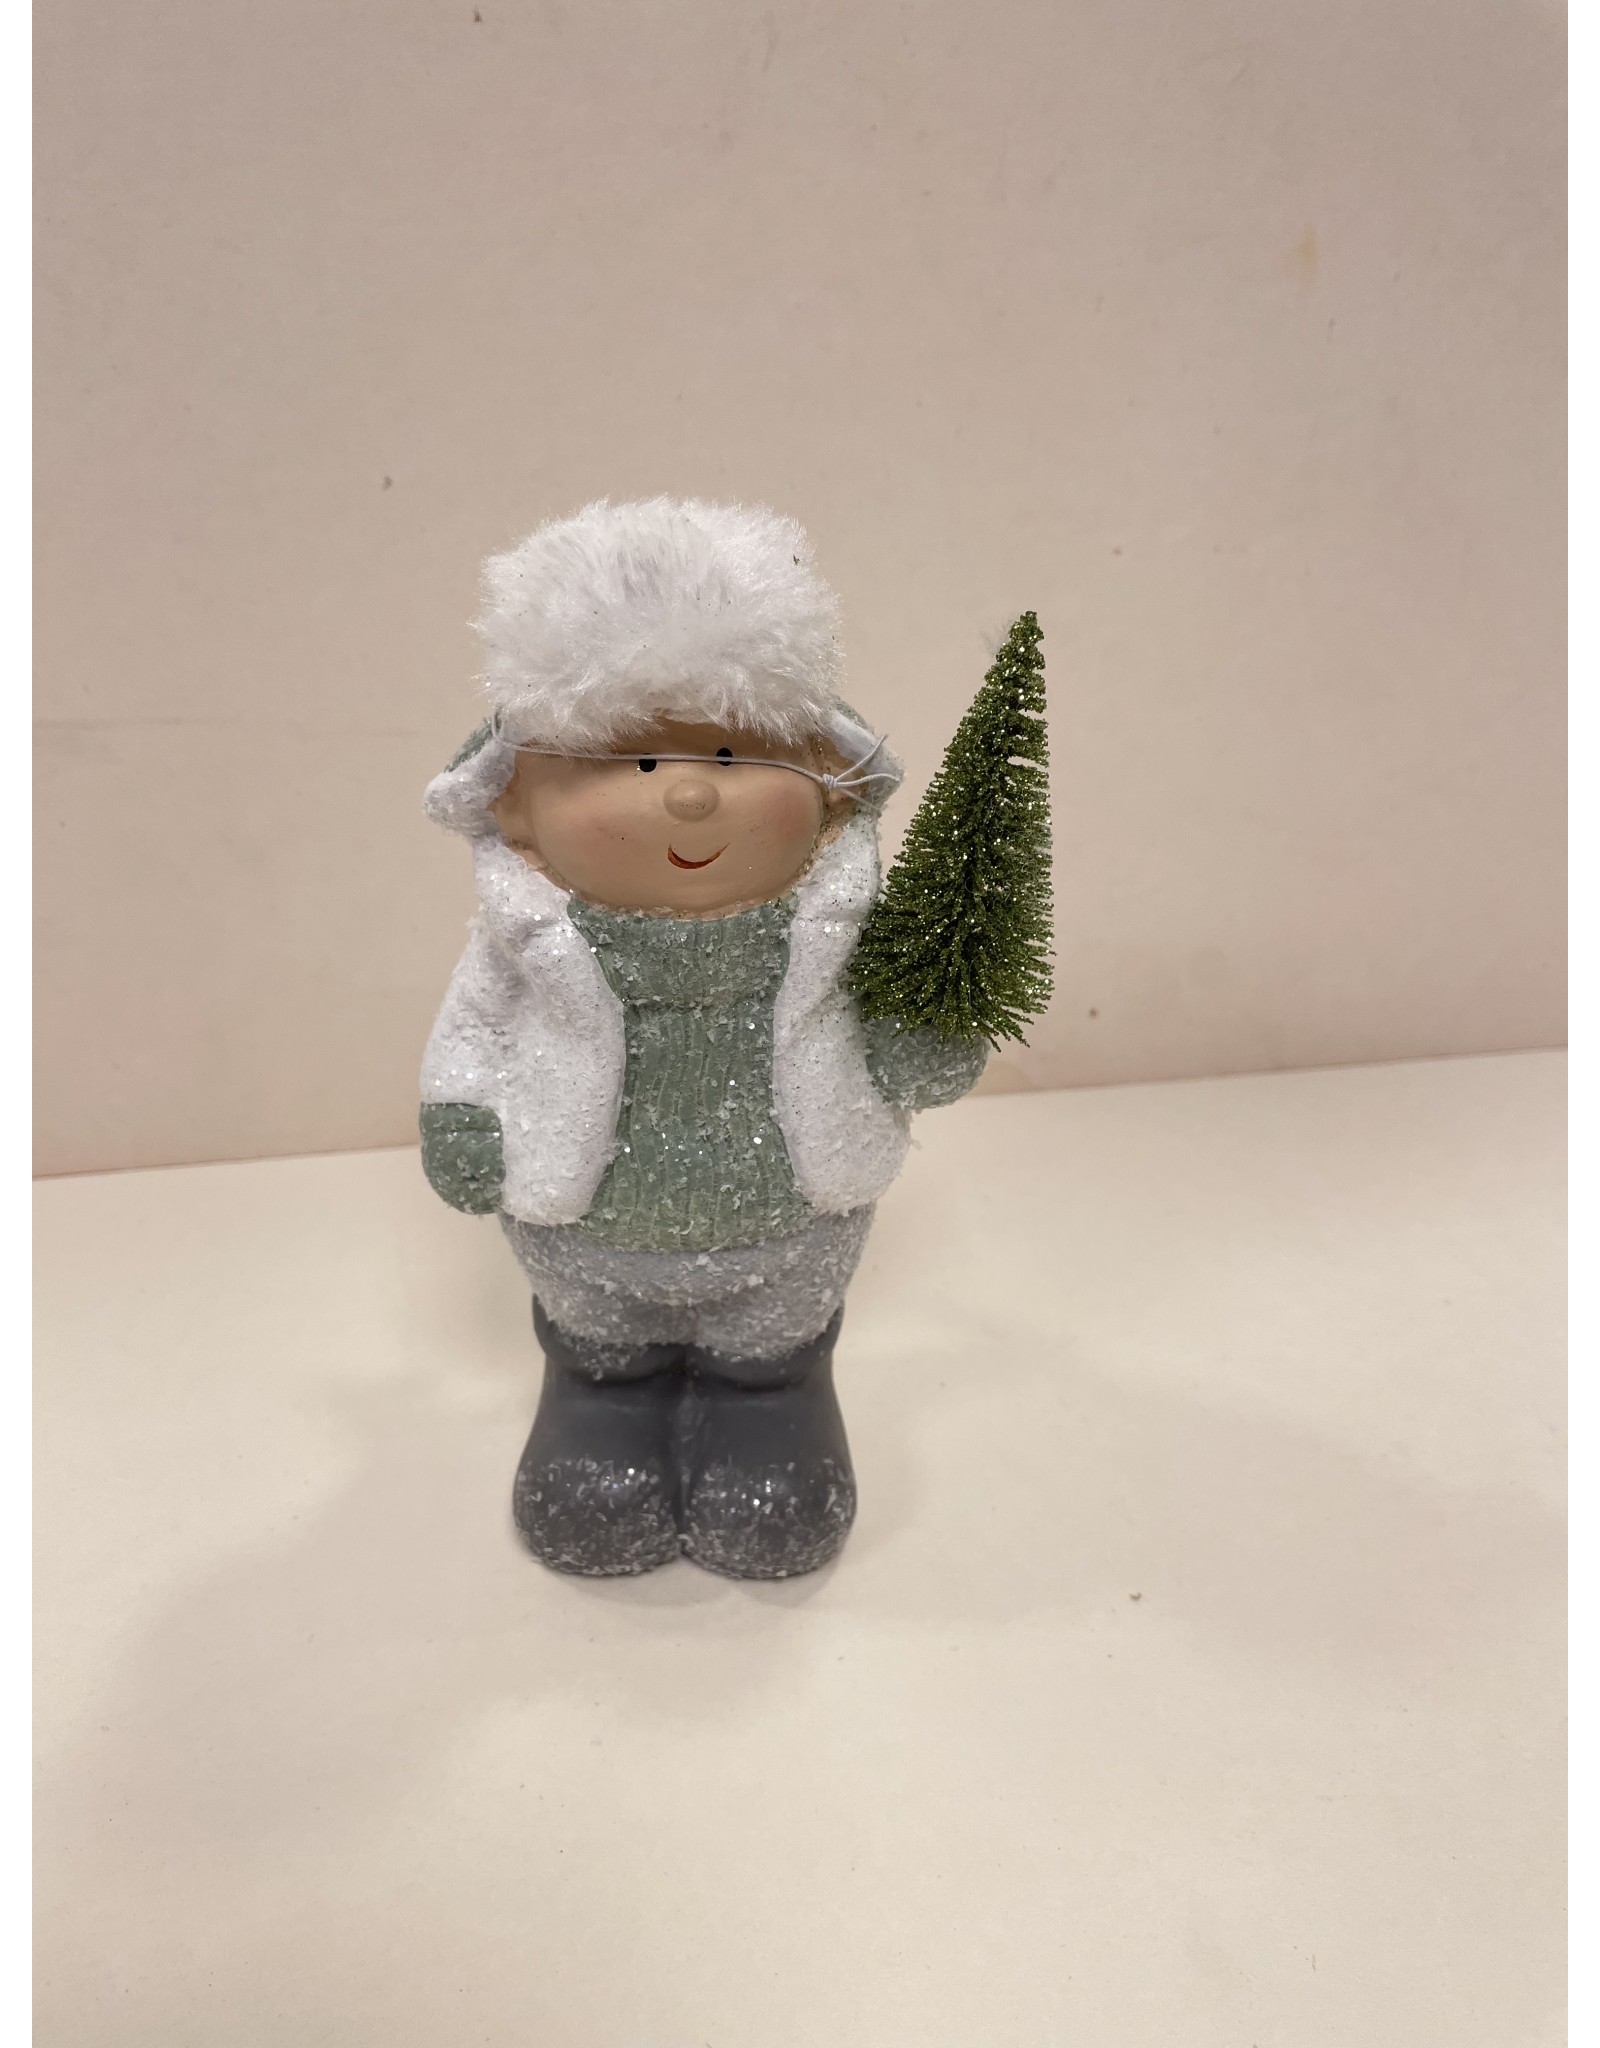 MANSION Jongen of meisje mint groen met kerstboom  16 cm